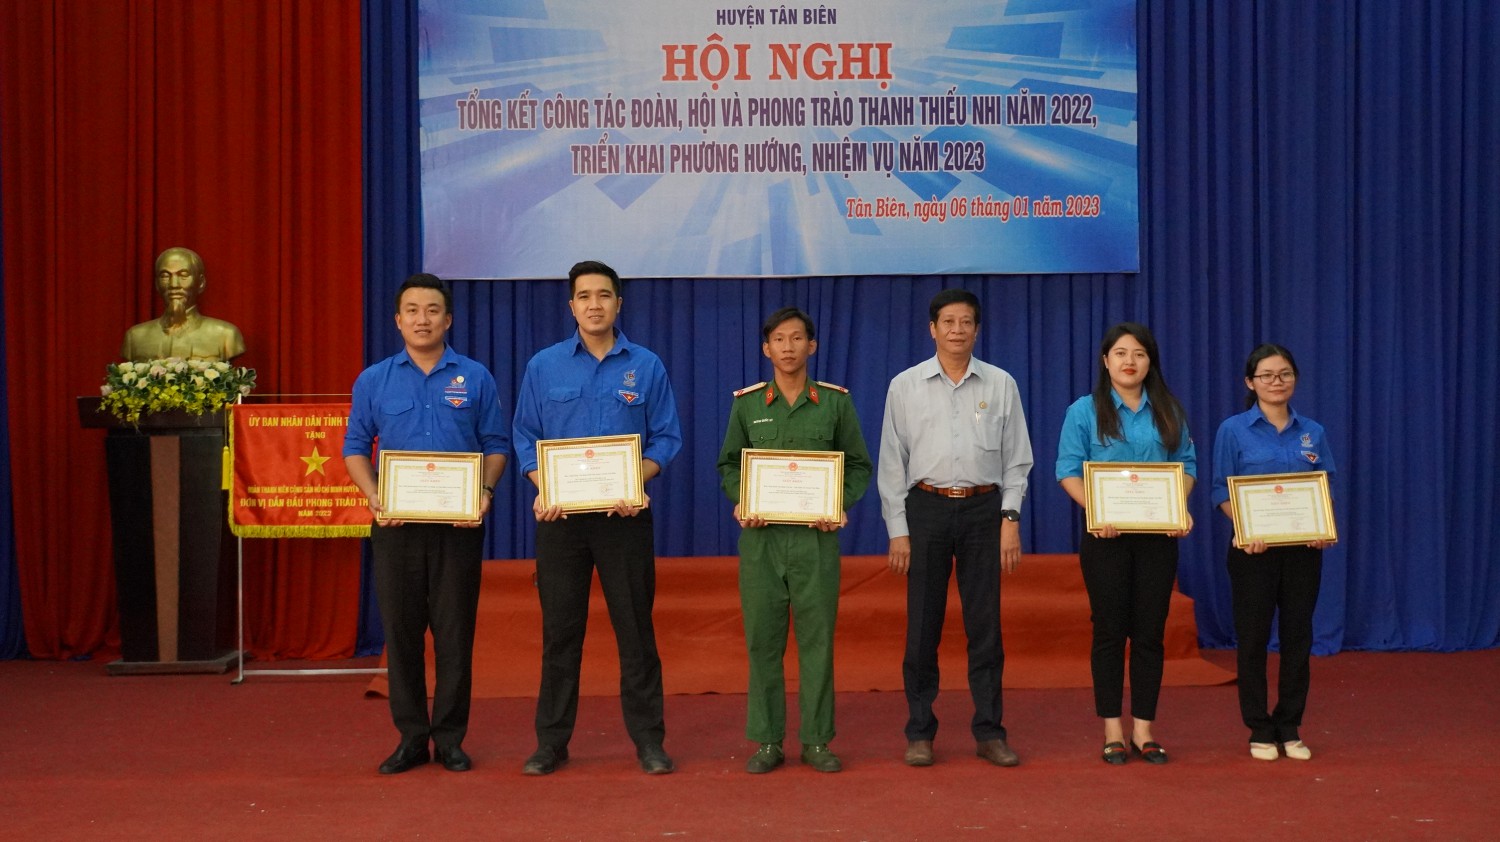 Huyện đoàn Tân Biên dẫn đầu công tác đoàn và phòng trào thanh thiếu nhi năm 2022